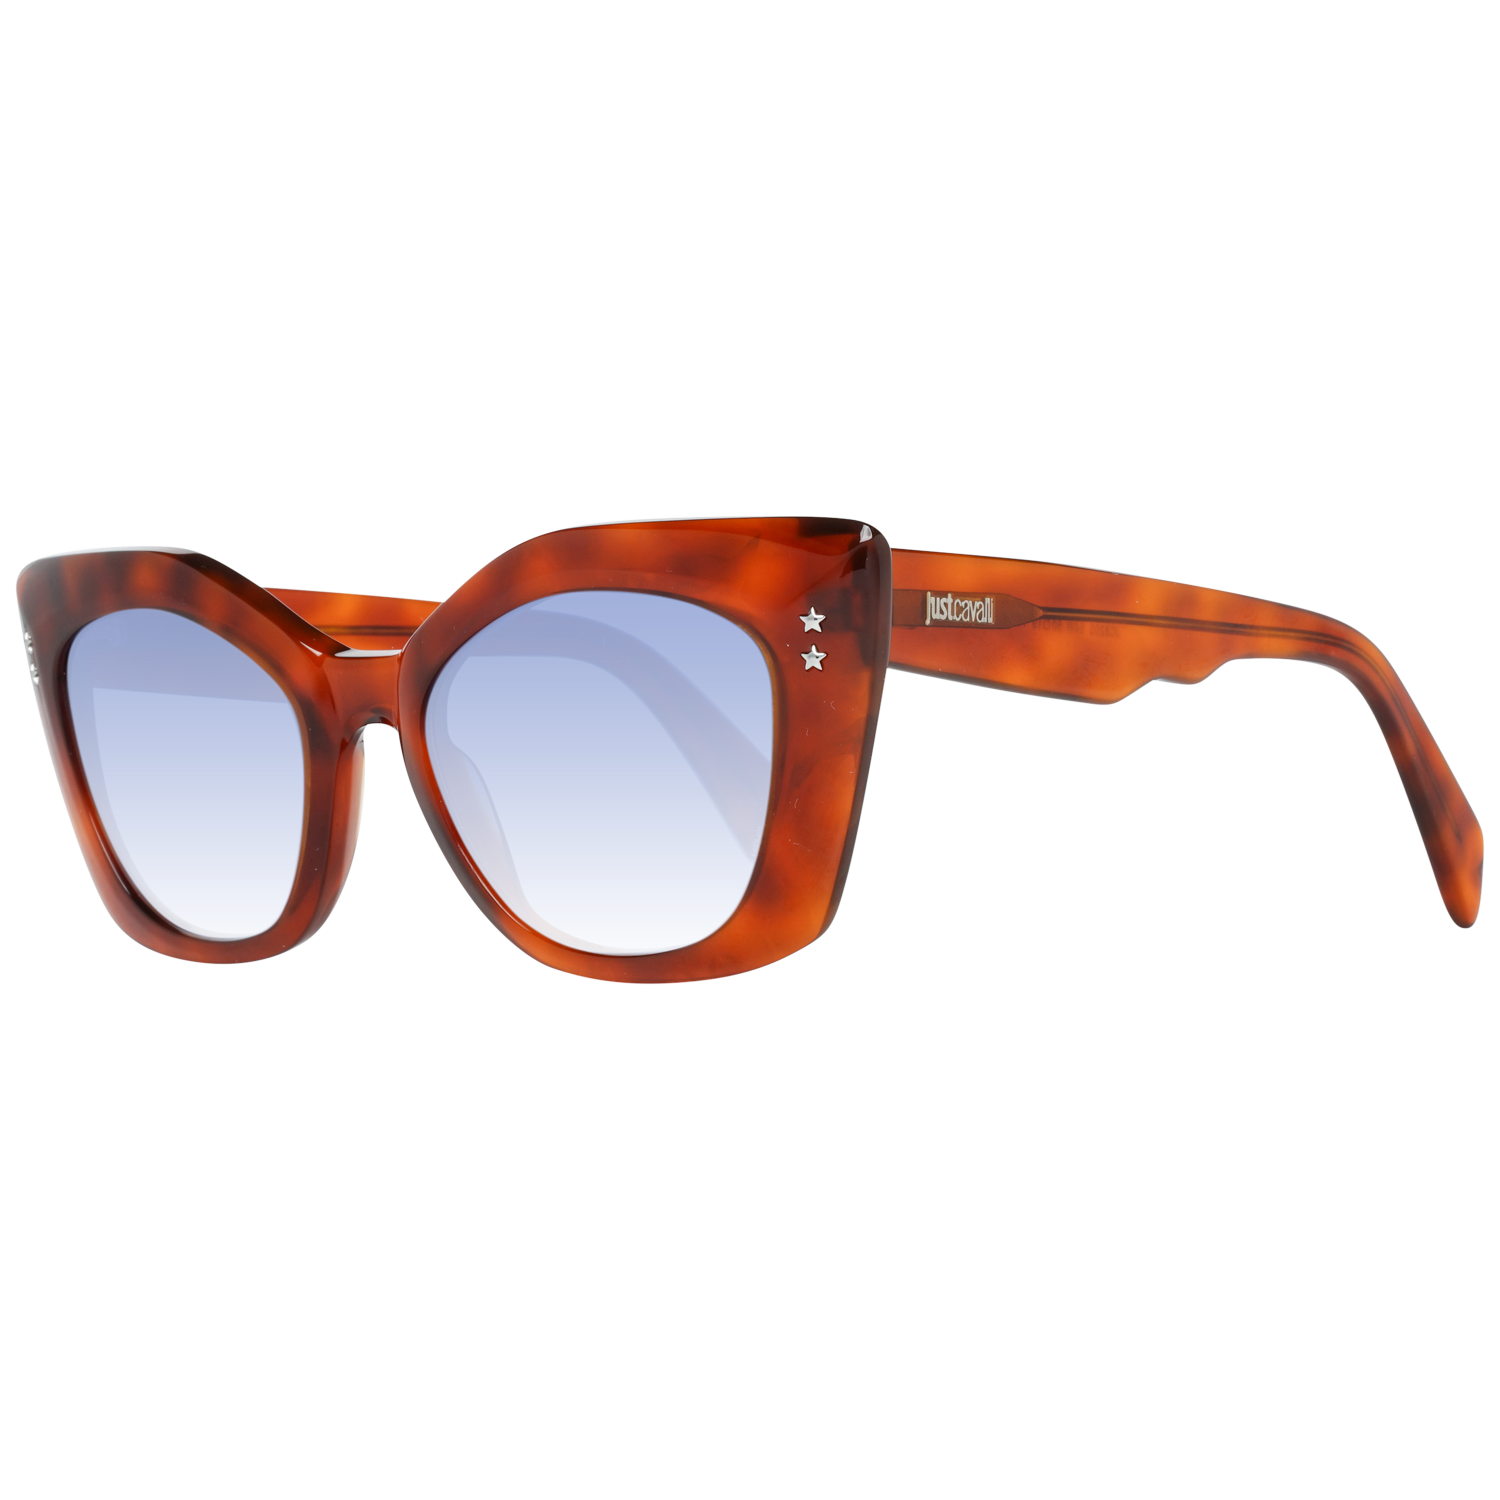 Just Cavalli Sunglasses Just Cavalli Sunglasses JC820S 54W 50 Eyeglasses Eyewear UK USA Australia 